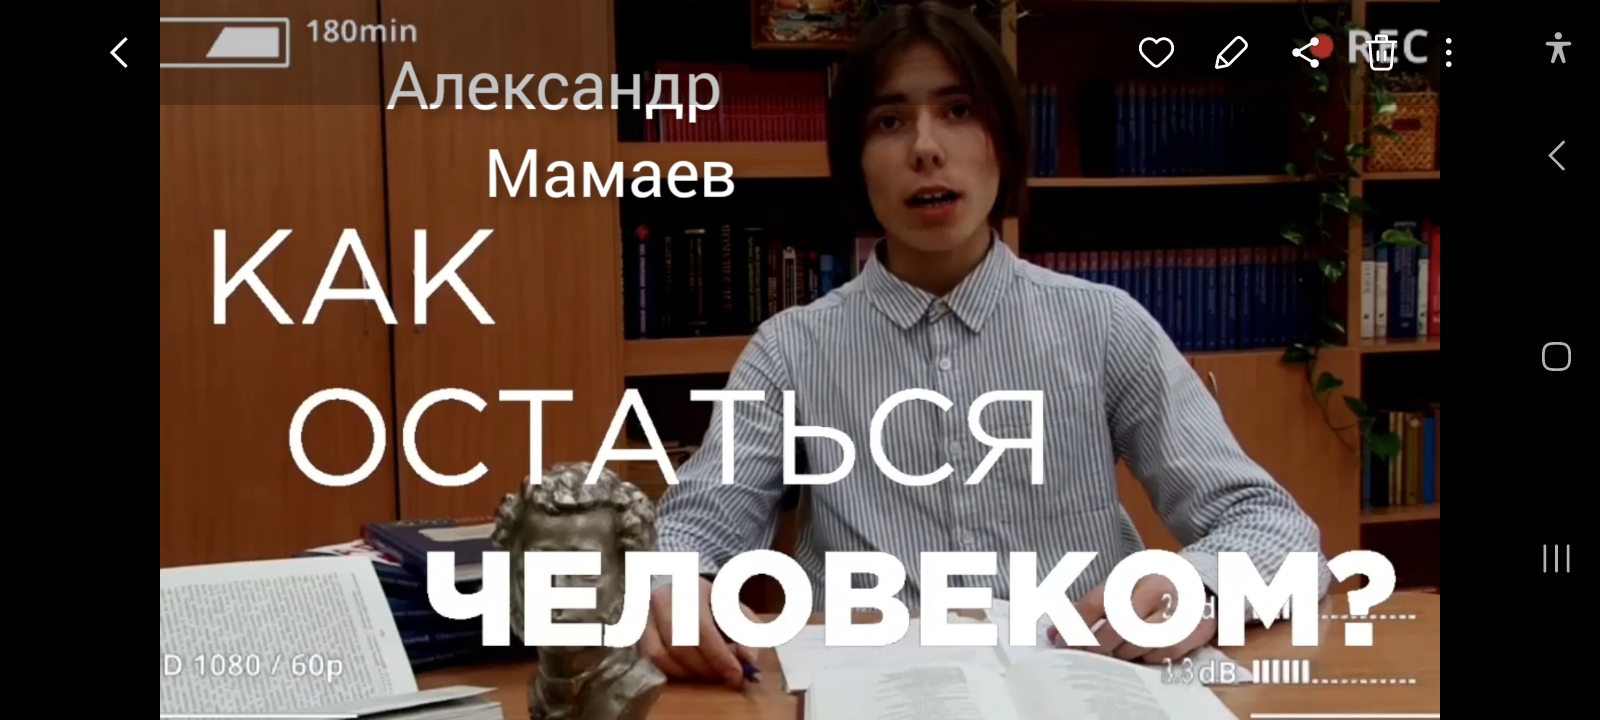 "Мамаев Александр" визитка для конкурса "Ученик года ". Новосибирск, 2023